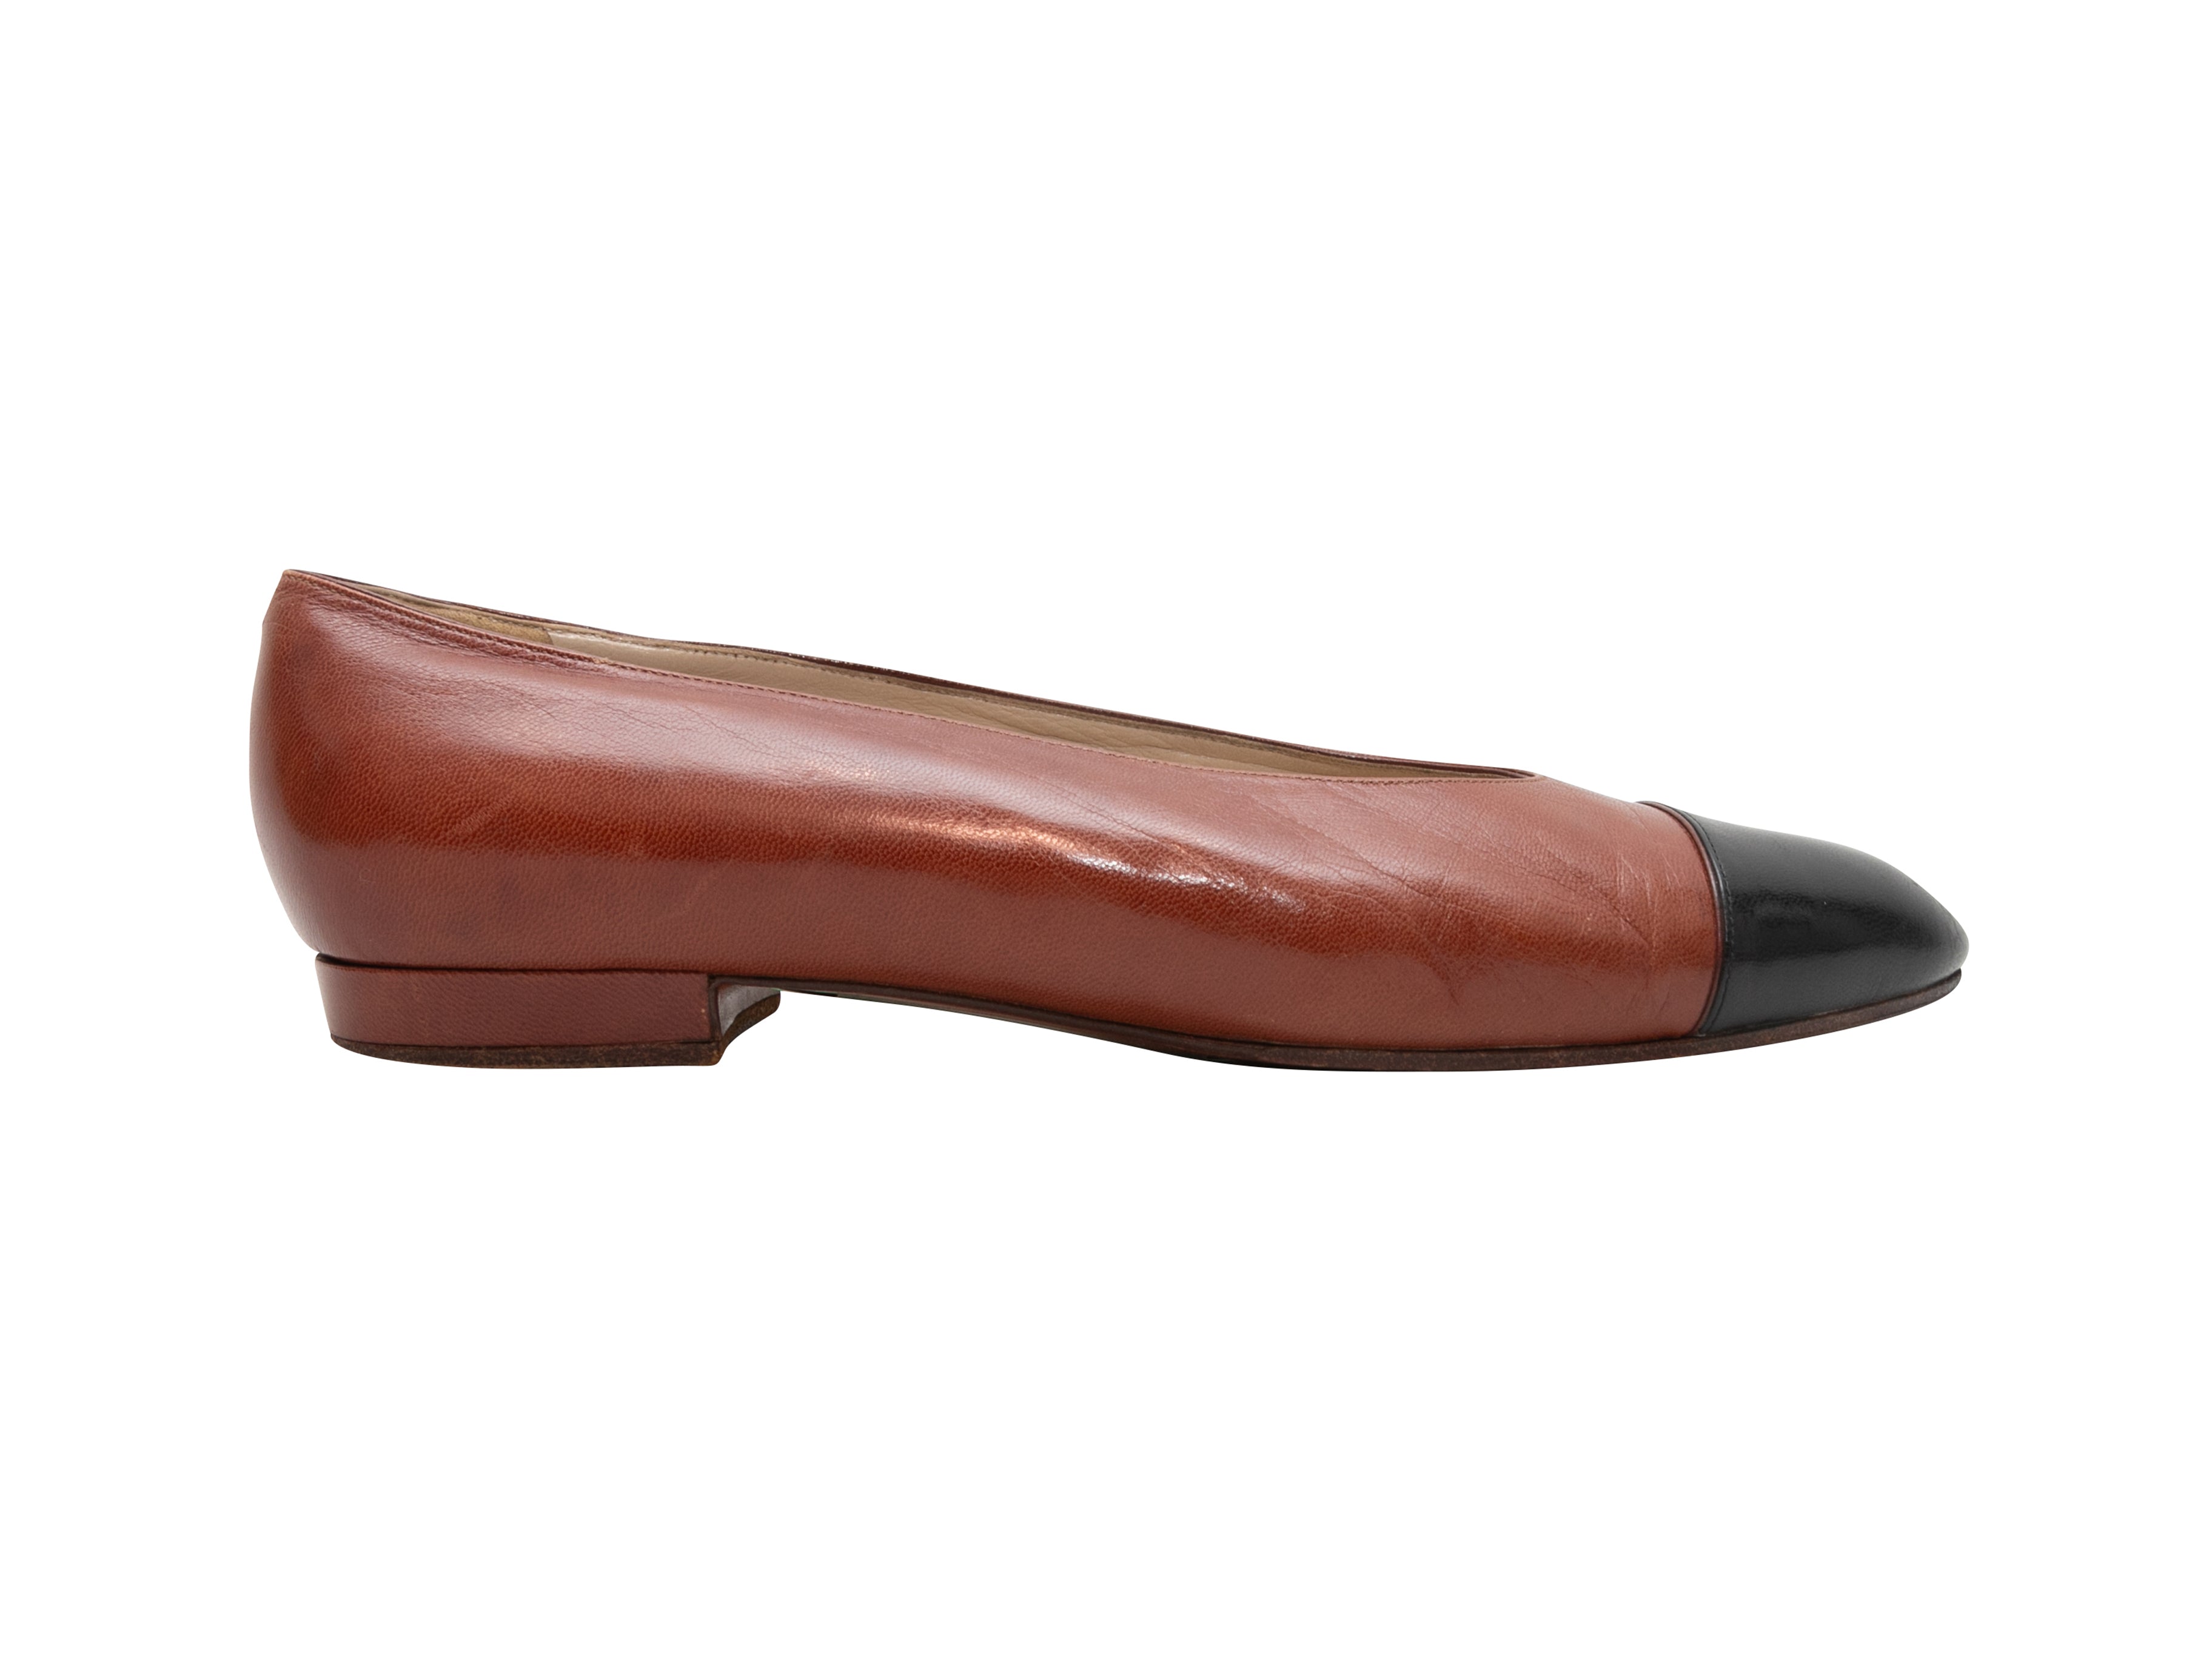 Vintage Brown & Black Chanel Cap-Toe Ballet Flats Size 36.5 - Designer Revival